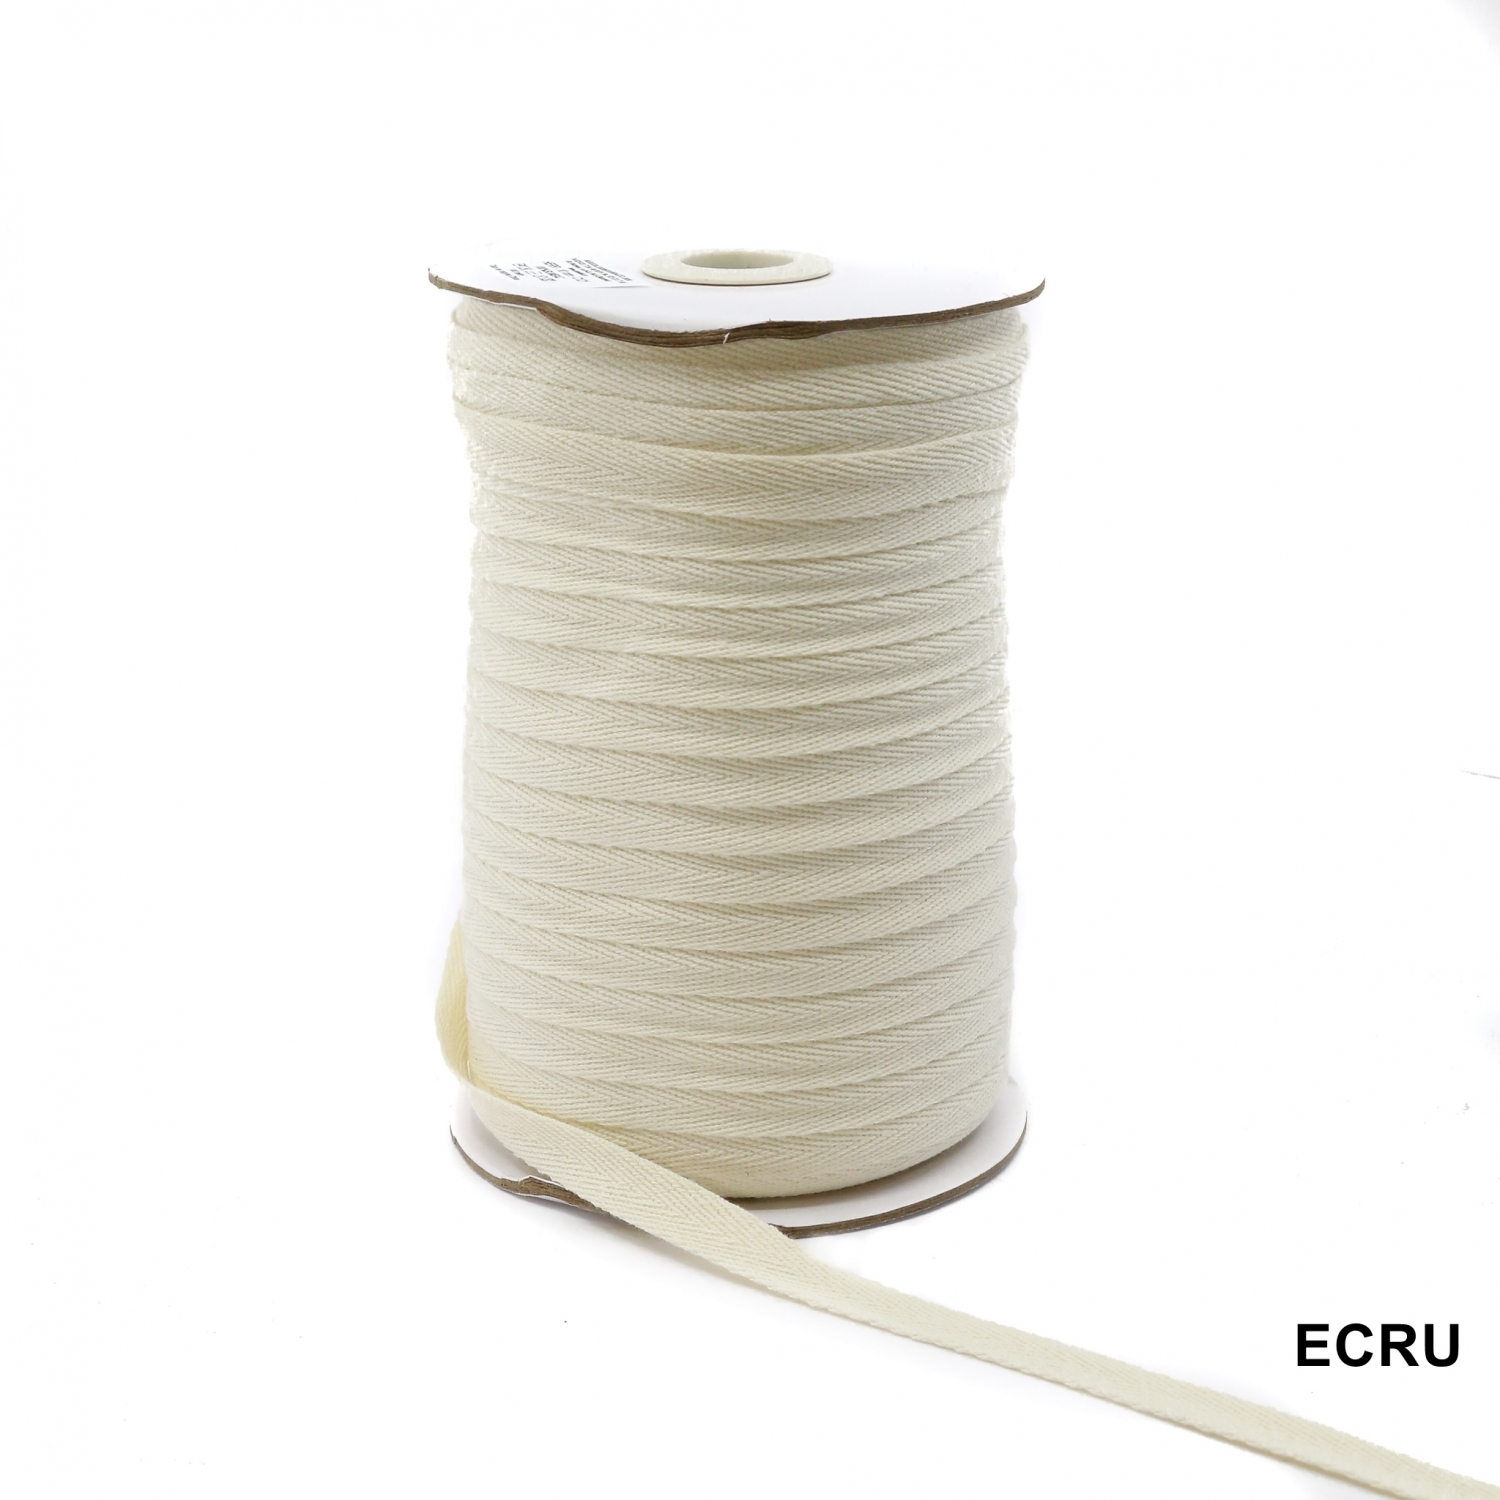 Decorative Cotton Tape, Herringbone, Ecru, width 10 mm (100 meters/roll)